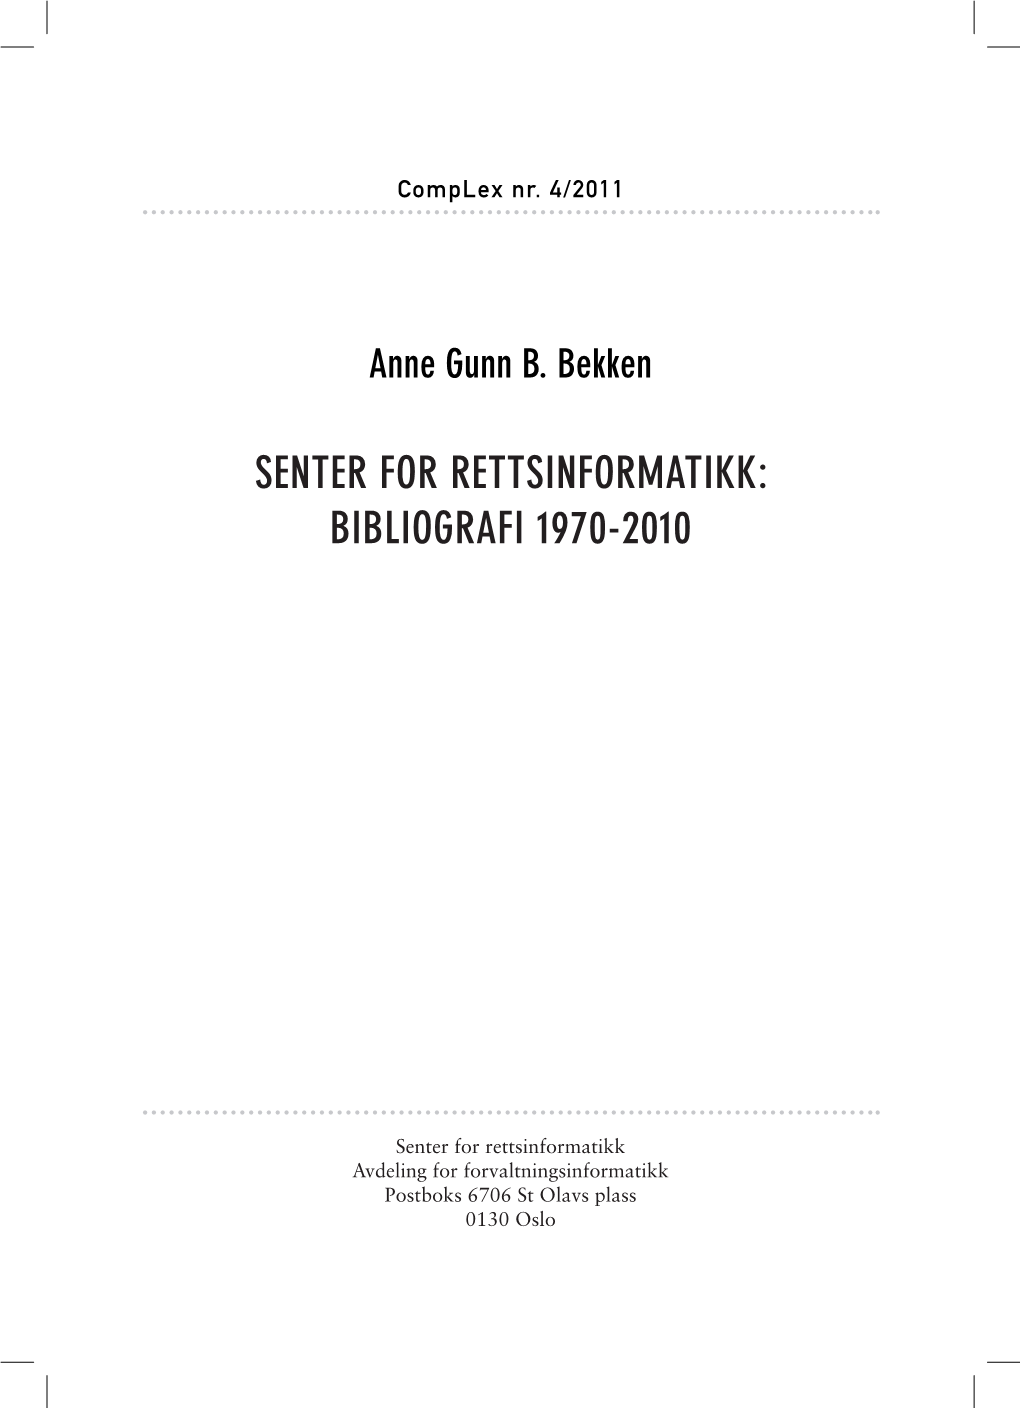 Senter for Rettsinformatikk: Bibliografi 1970-2010